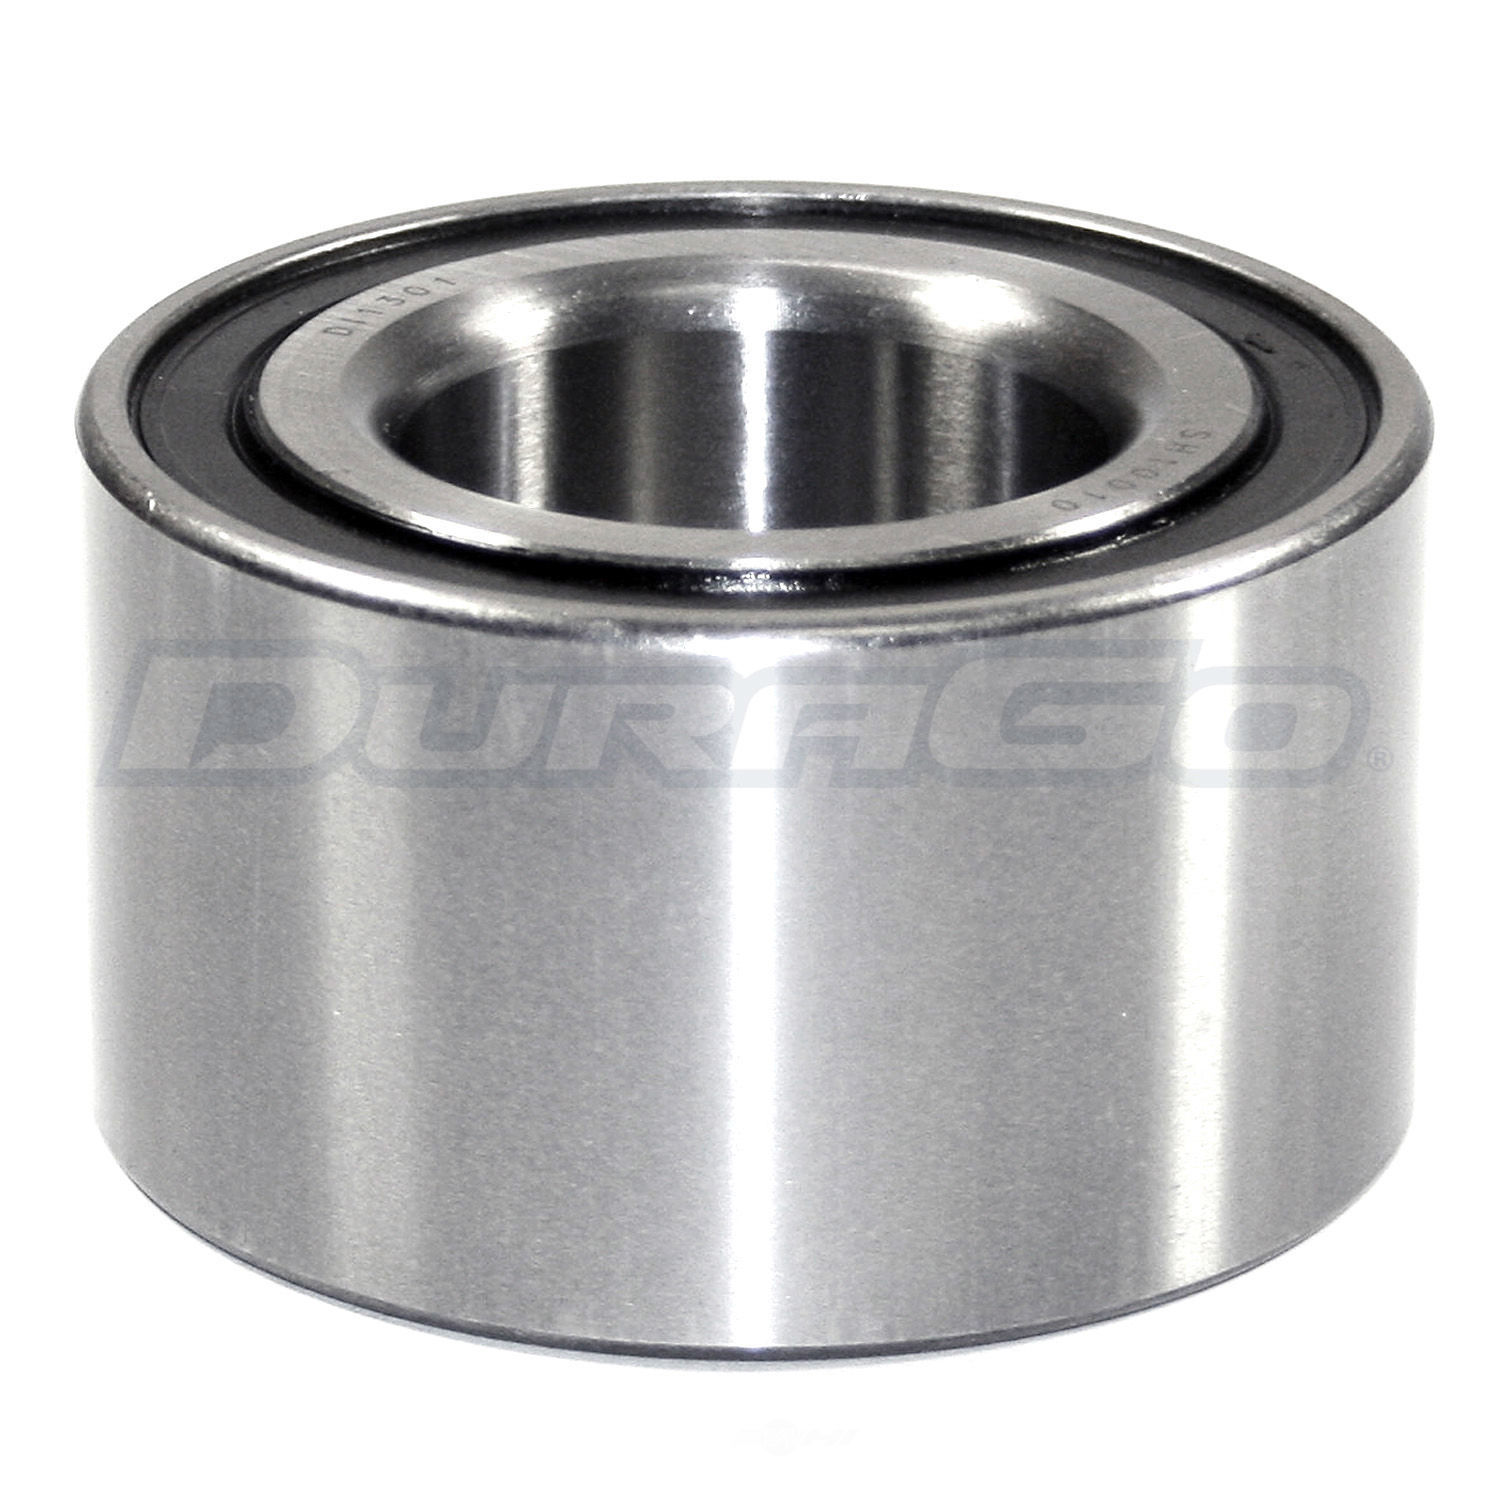 DURAGO - Wheel Bearing - D48 295-10010